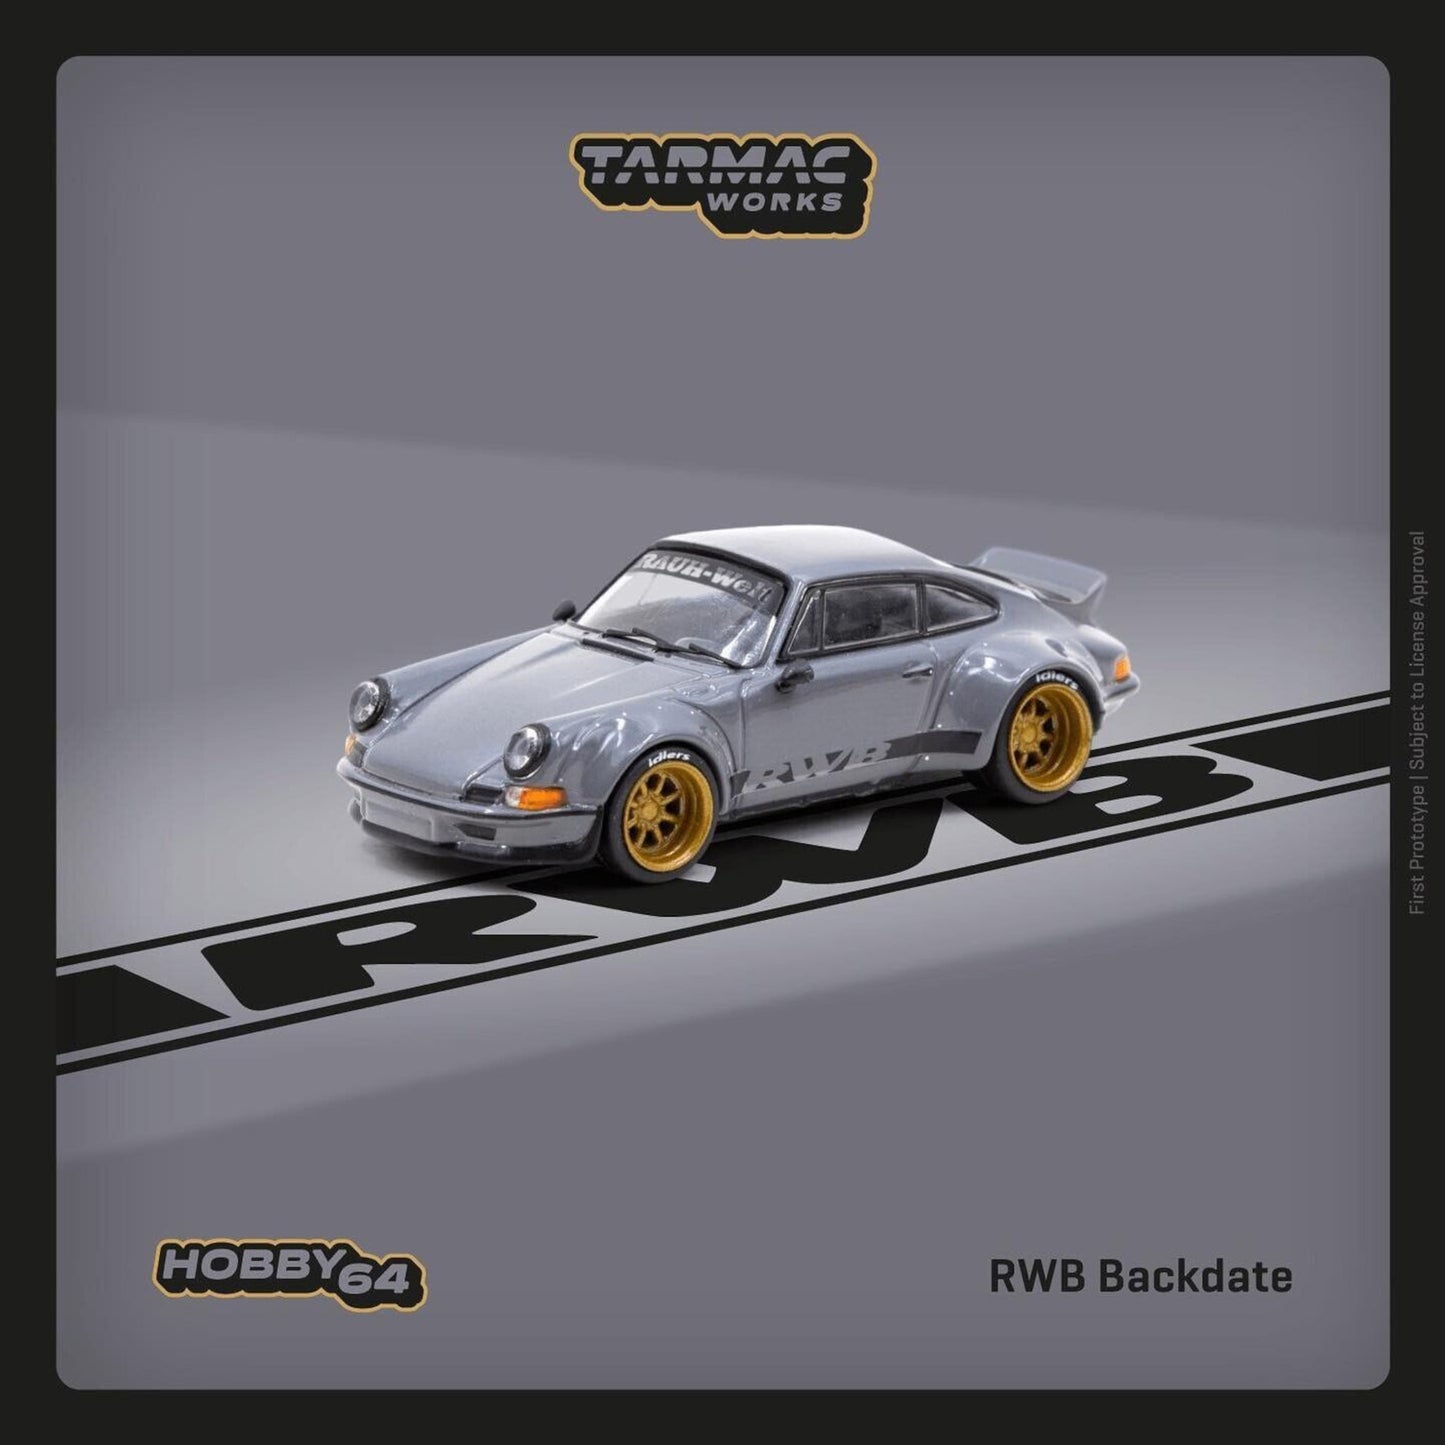 Porsche RWB Backdate Gris Tarmac Works 1/64 - TCT64046GYGR